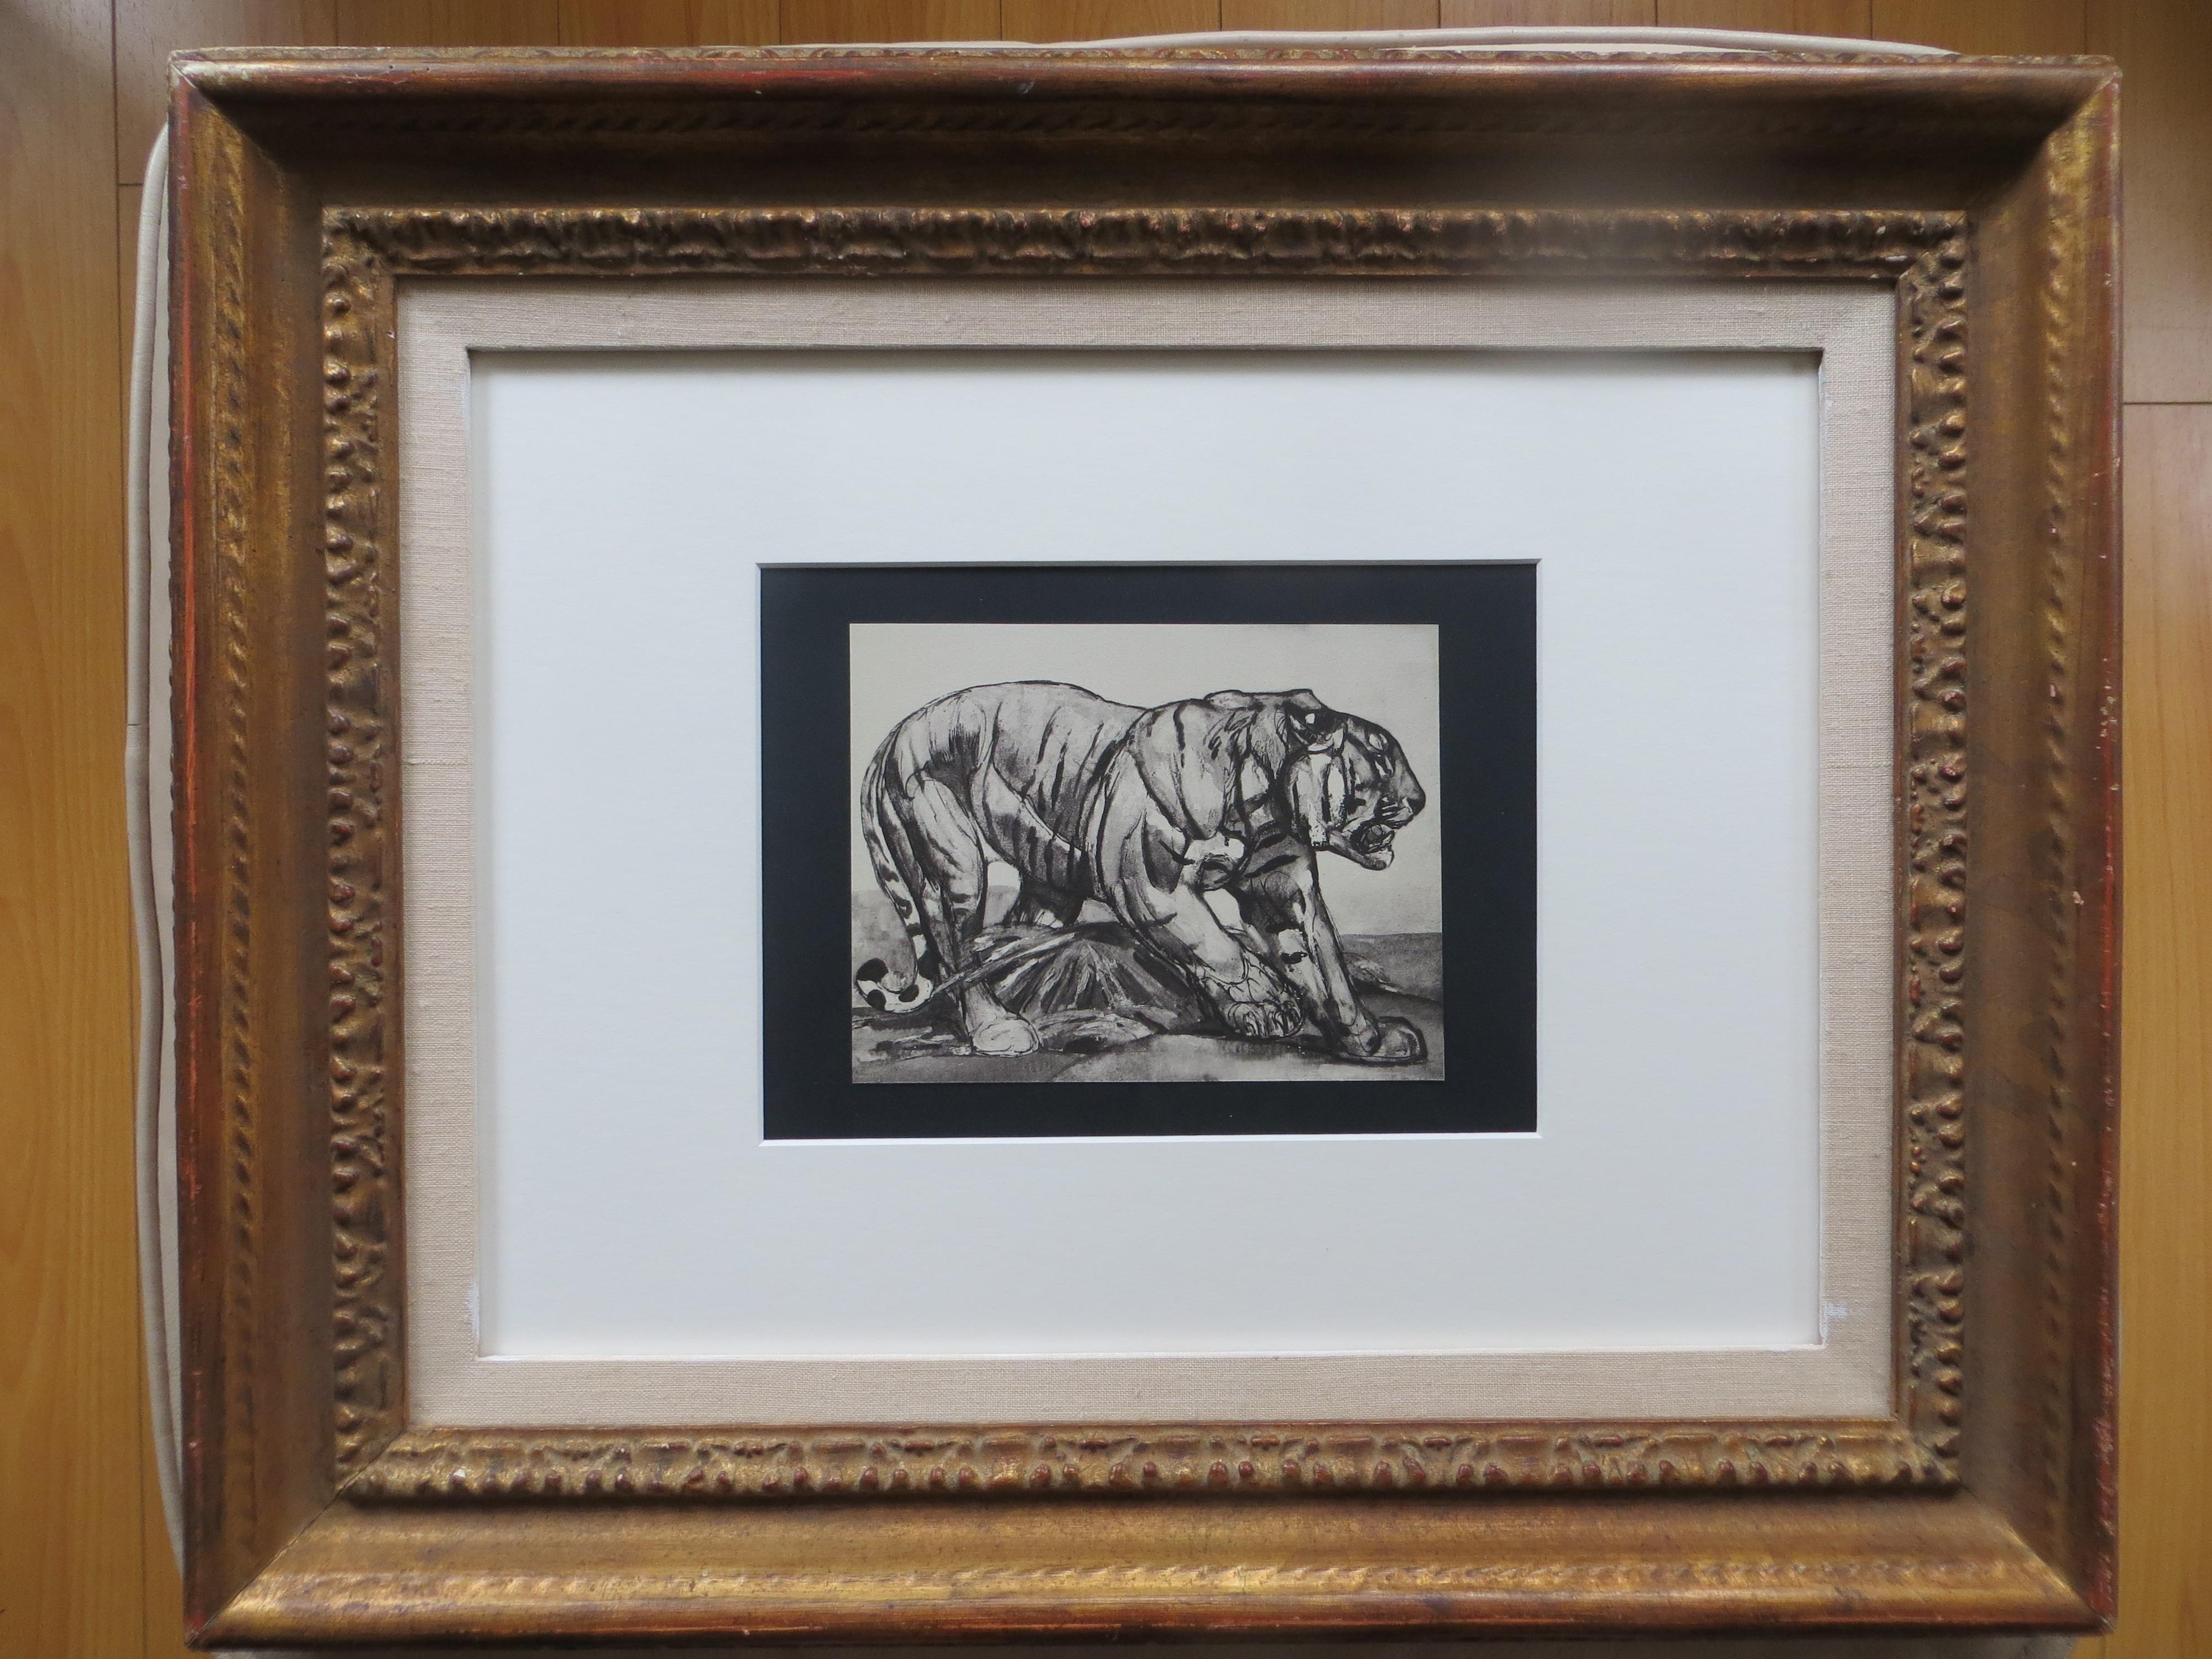 Pierre-Paul Jouve Figurative Print - Tiger Walking, Original Lithograph Illustration by Paul Jouve, 1948